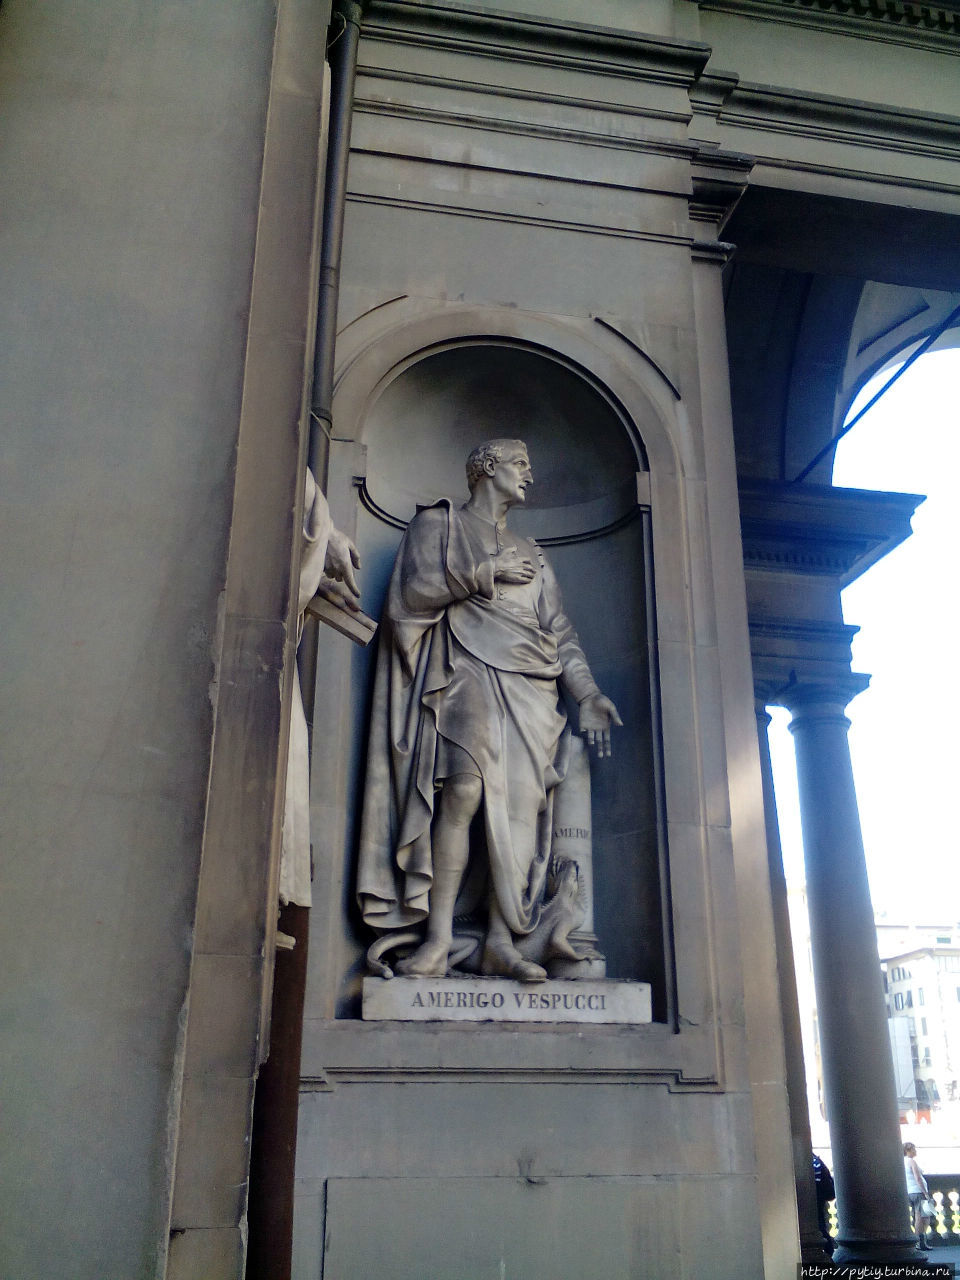 Америго Веспучи. Родился во Флоренции. Путешественник в честь которого названа Америка. Римини, Италия